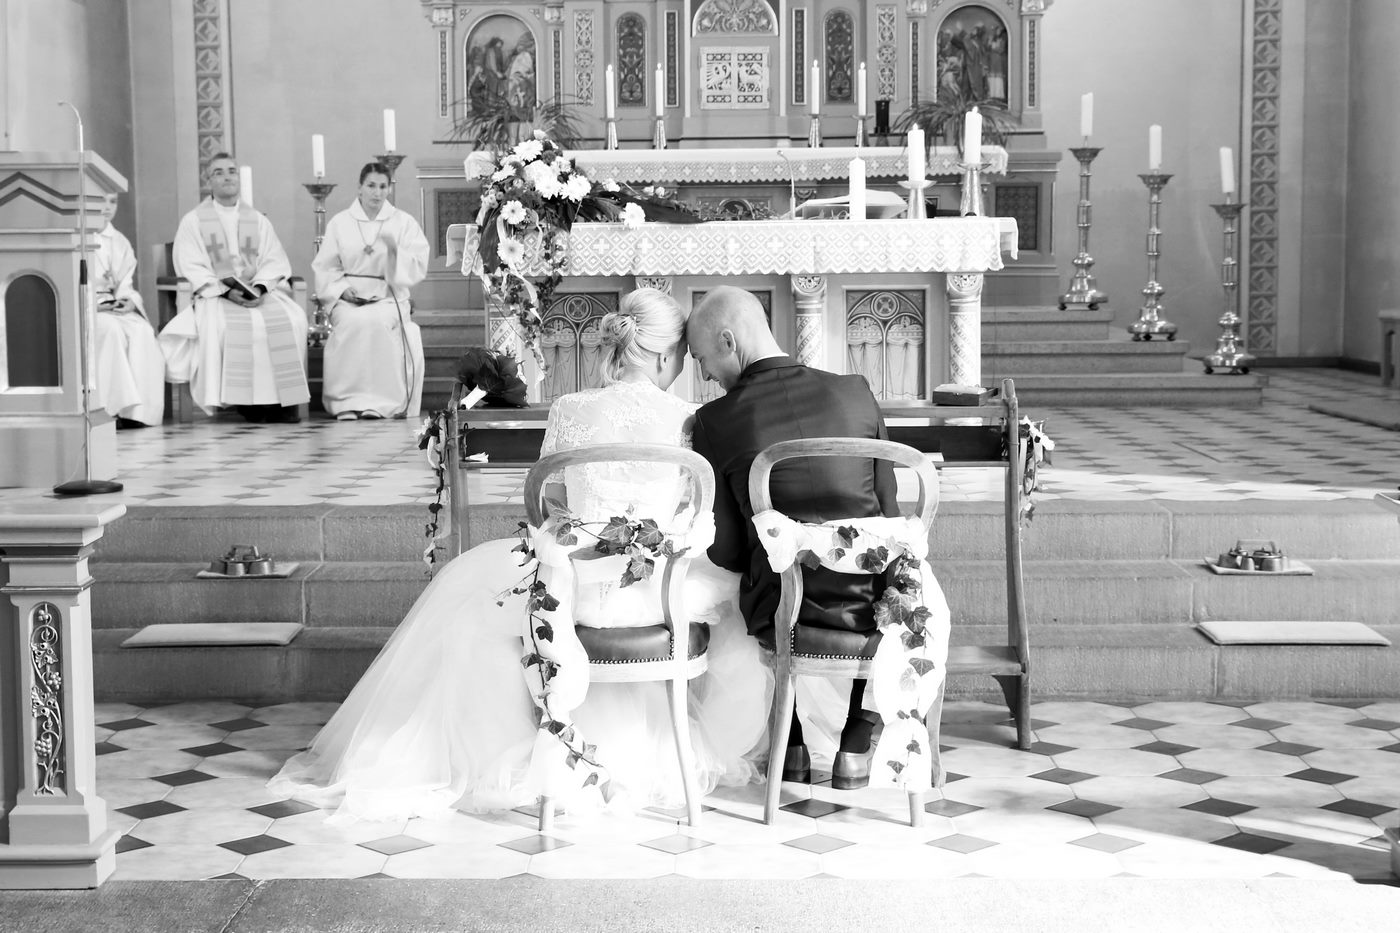 Brautpaar vor dem Altar in der Kirche sitzend